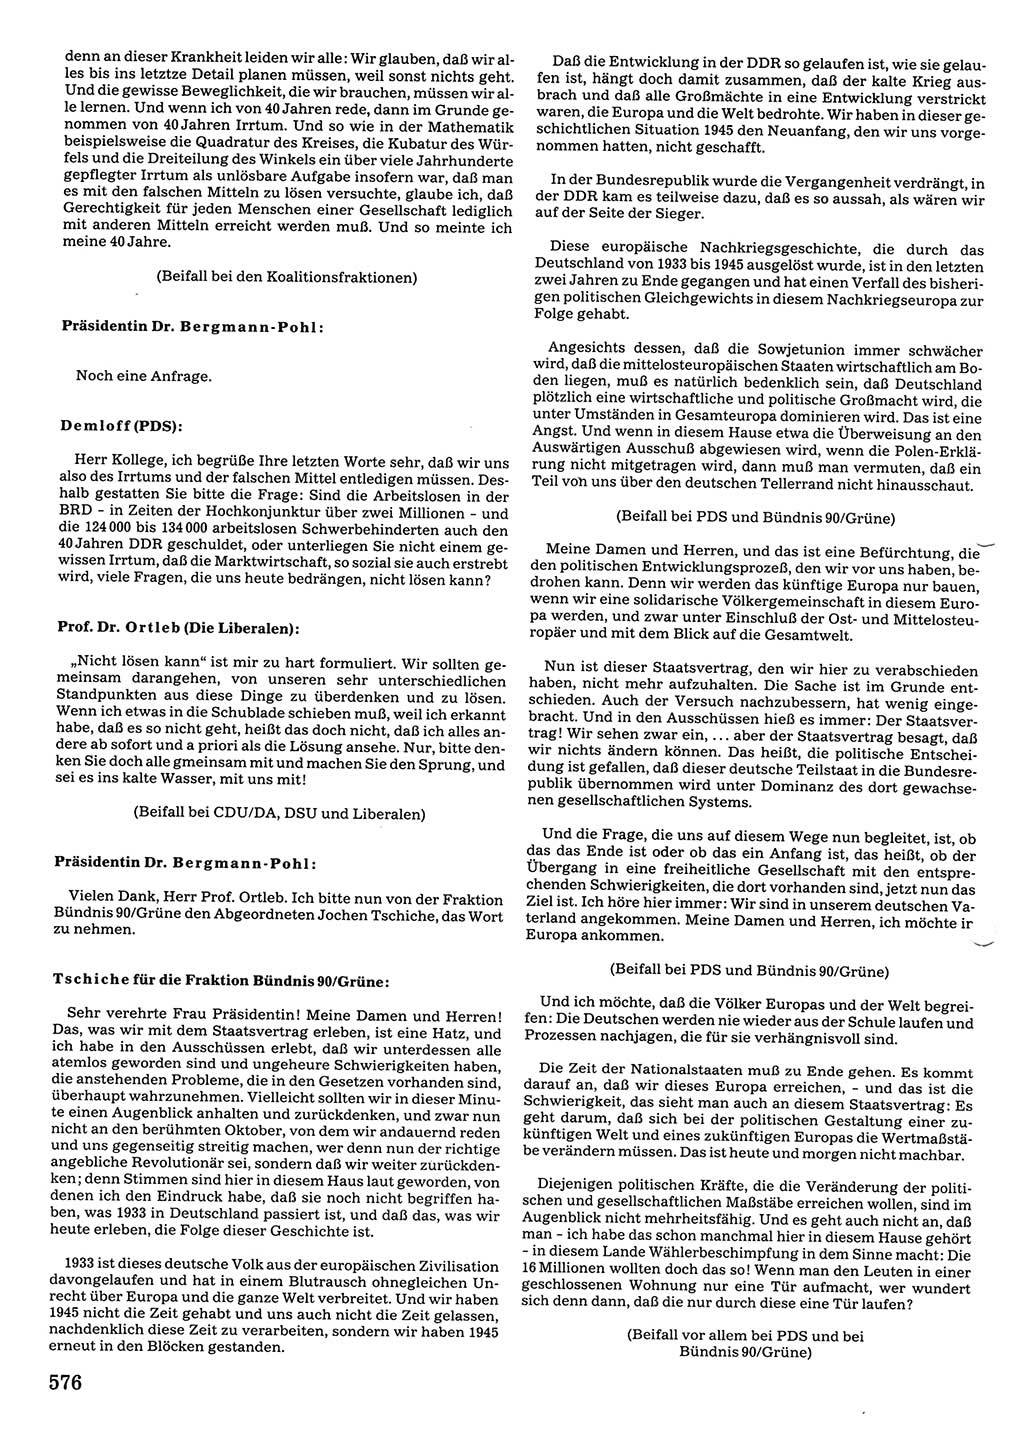 Tagungen der Volkskammer (VK) der Deutschen Demokratischen Republik (DDR), 10. Wahlperiode 1990, Seite 576 (VK. DDR 10. WP. 1990, Prot. Tg. 1-38, 5.4.-2.10.1990, S. 576)